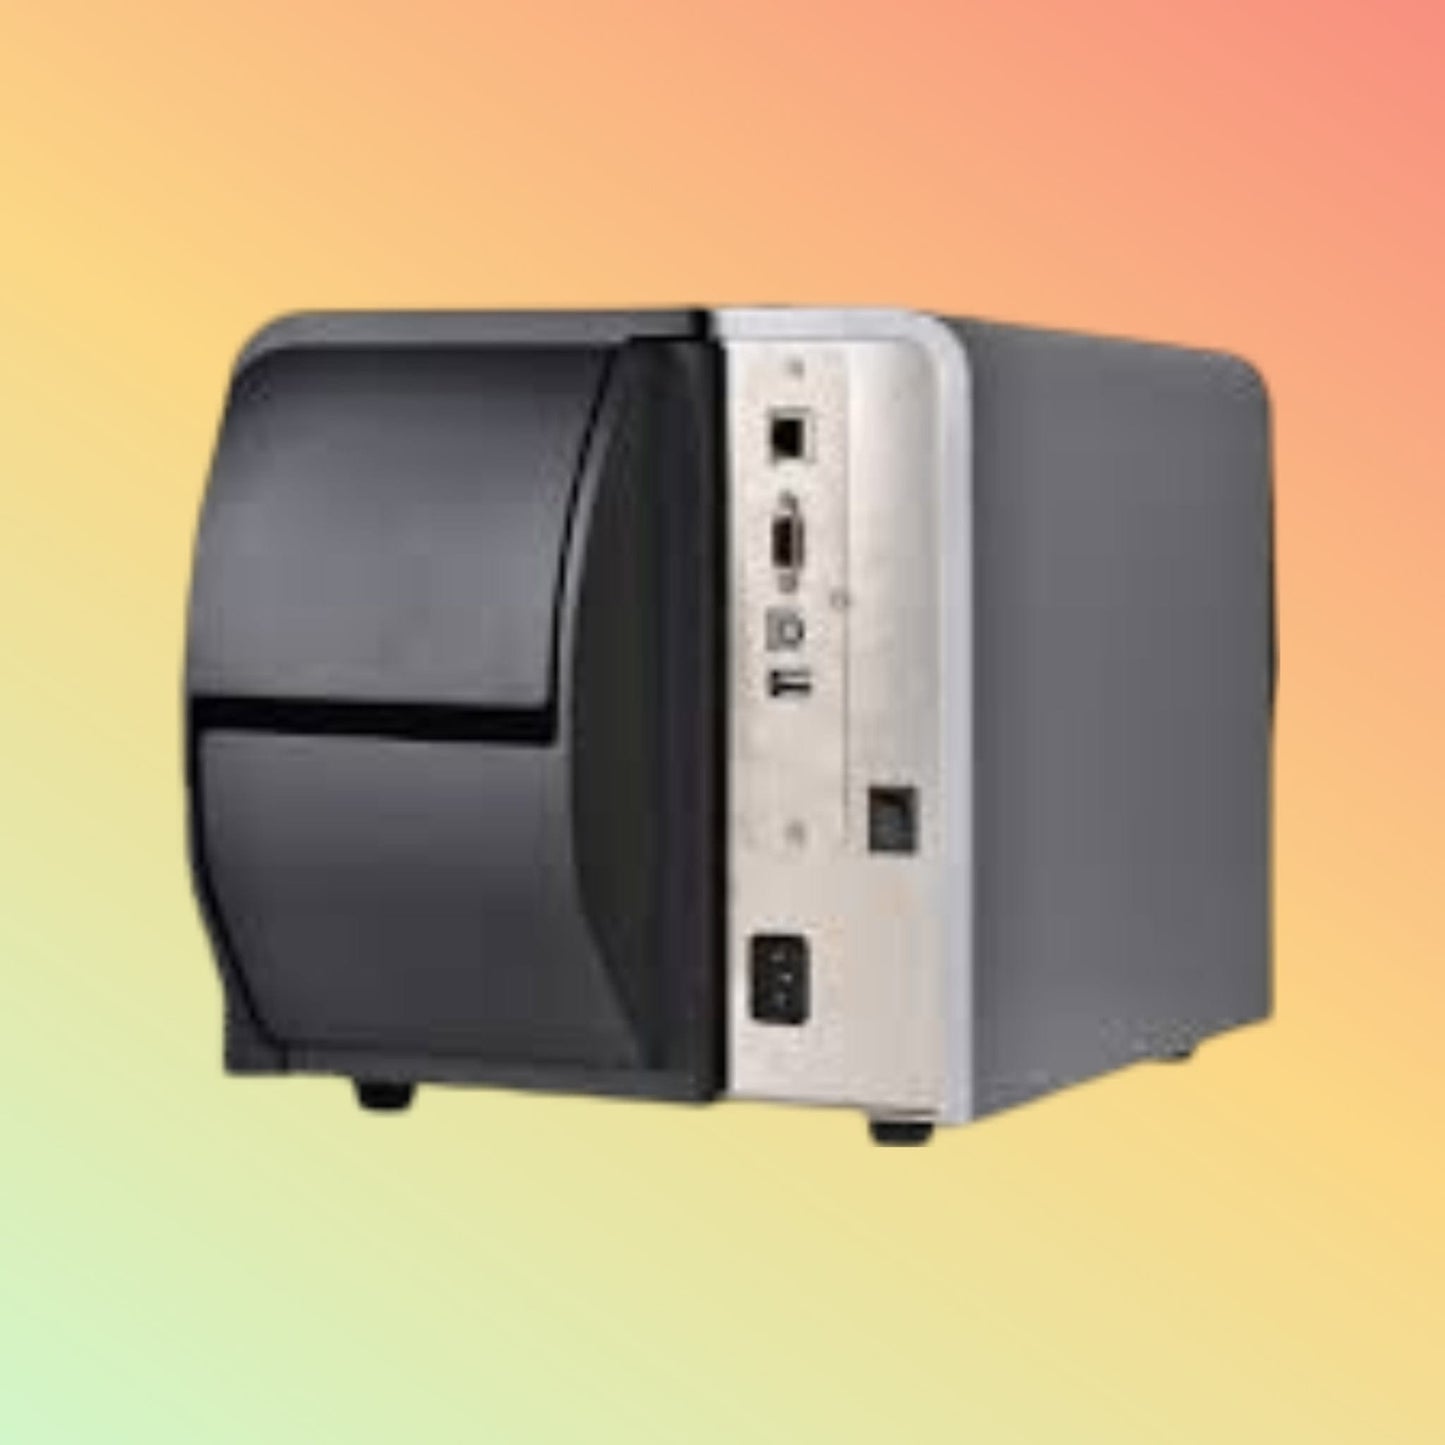 Barcode Printer - Gainscha GI-2408T(Empower) - Neotech